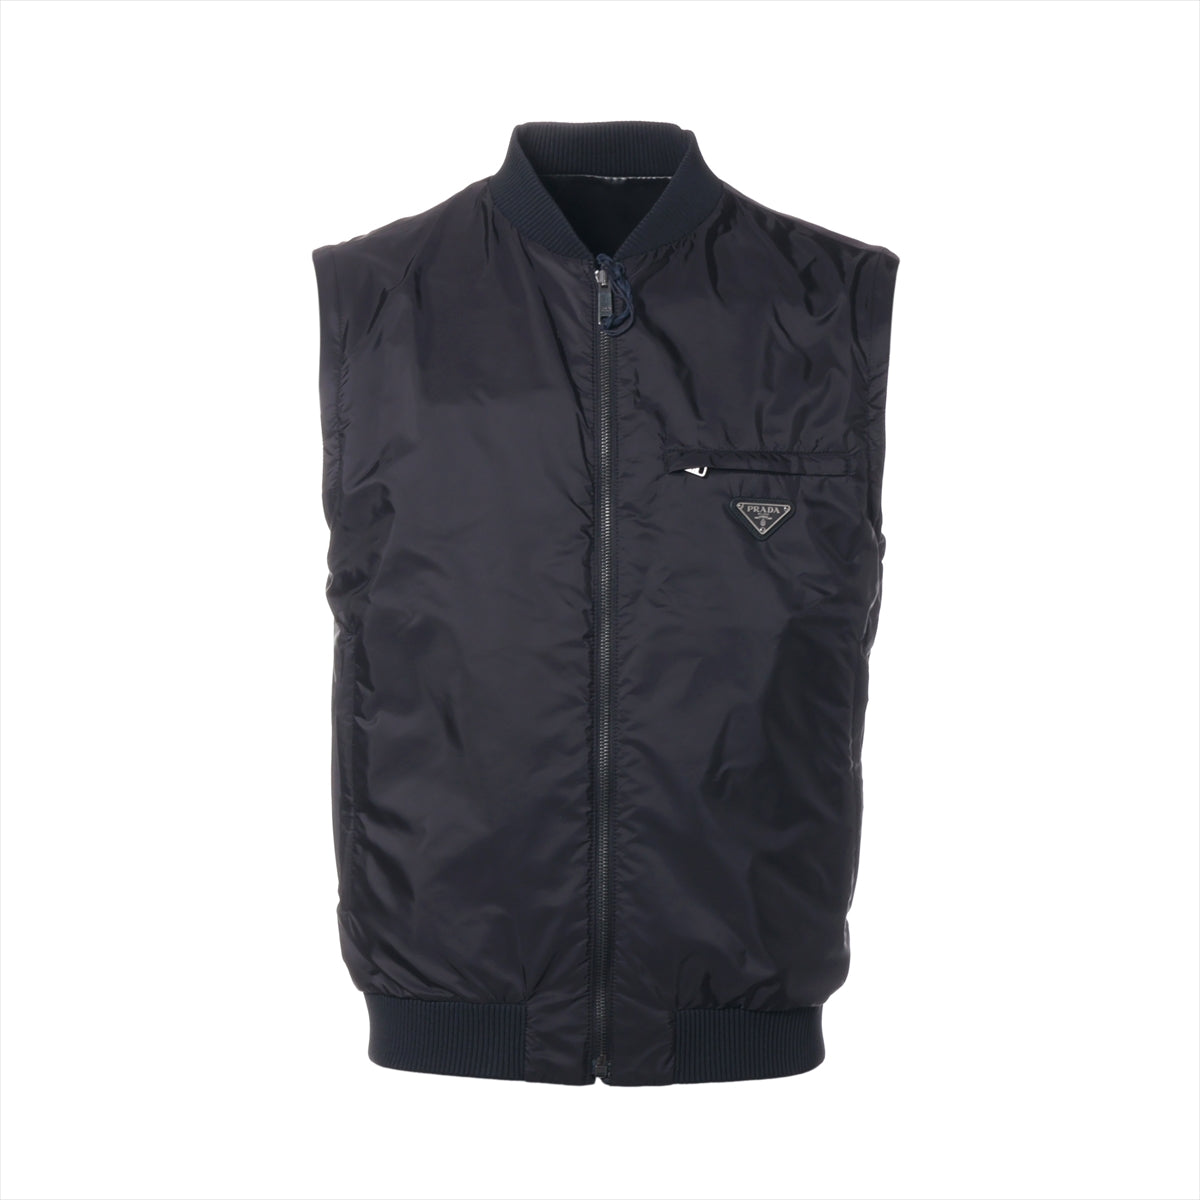 Prada 20 years Nylon & Leather Leather jacket 44 Men's Black  Lambskin UPW368 Triangle logo Reversible